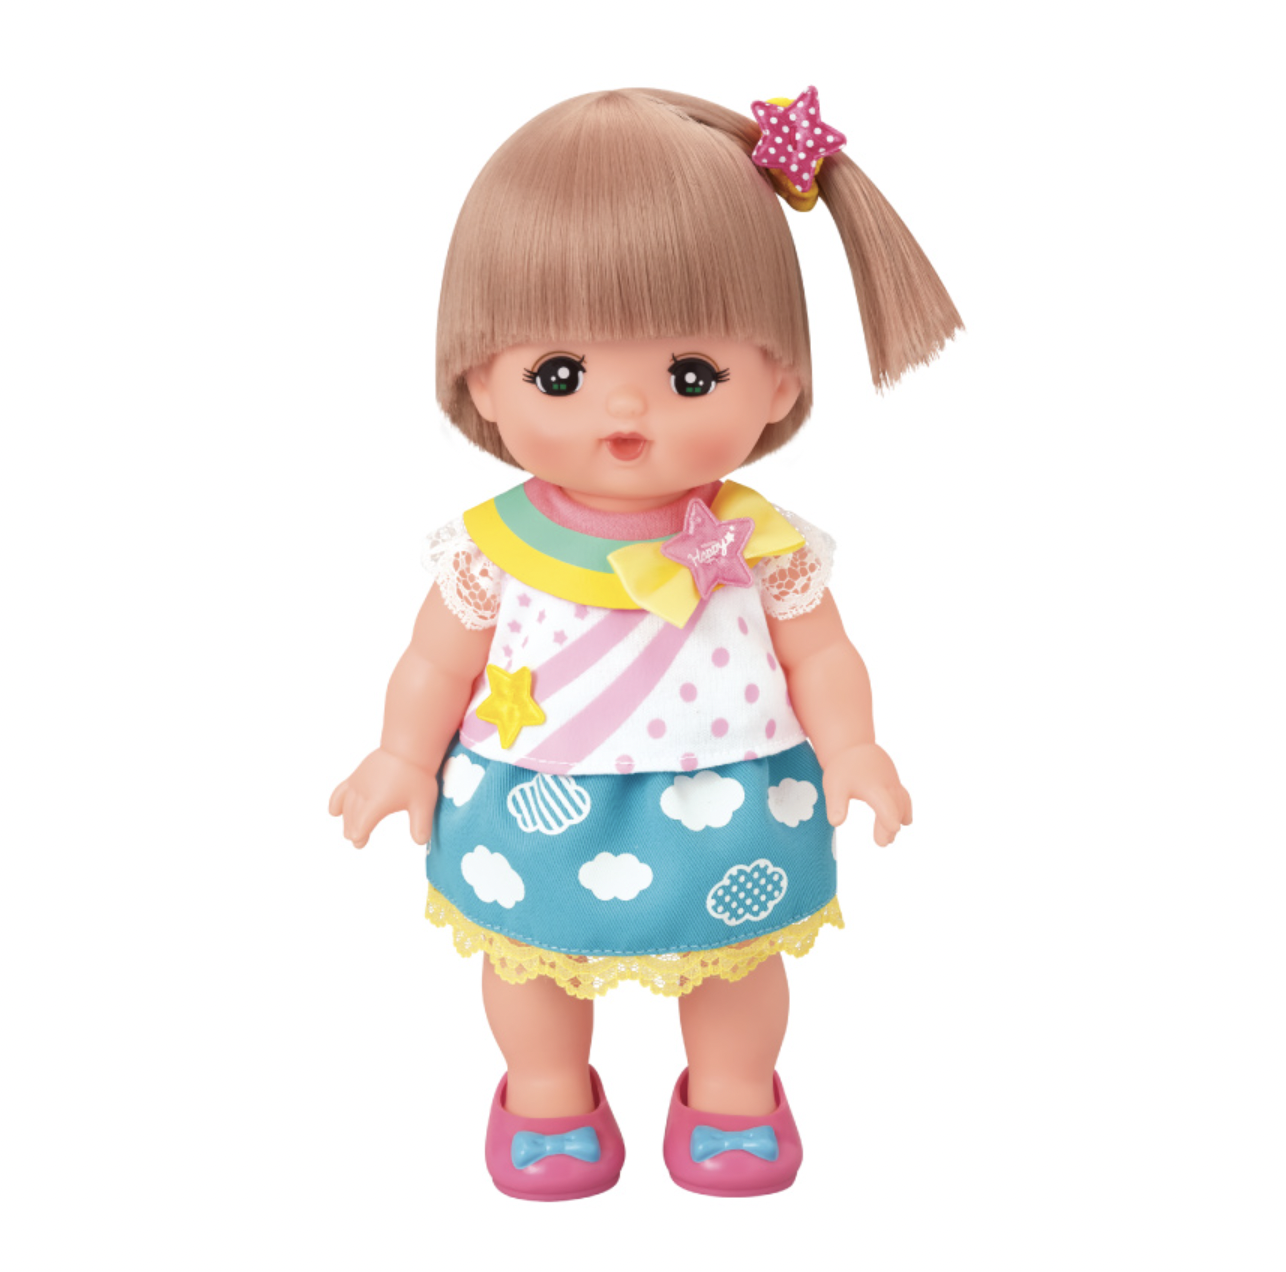 เมลจัง (MELL CHAN®) ชุดเมลจัง ชุดสายรุ้ง Rainbow Clothes Set ตุ๊กตาเมลจัง Mellchan ชุดตุ๊กตา ของเล่นเมลจัง ตุ๊กตาญี่ปุ่น ลิขสิทธิ์แท้ พร้อมส่ง